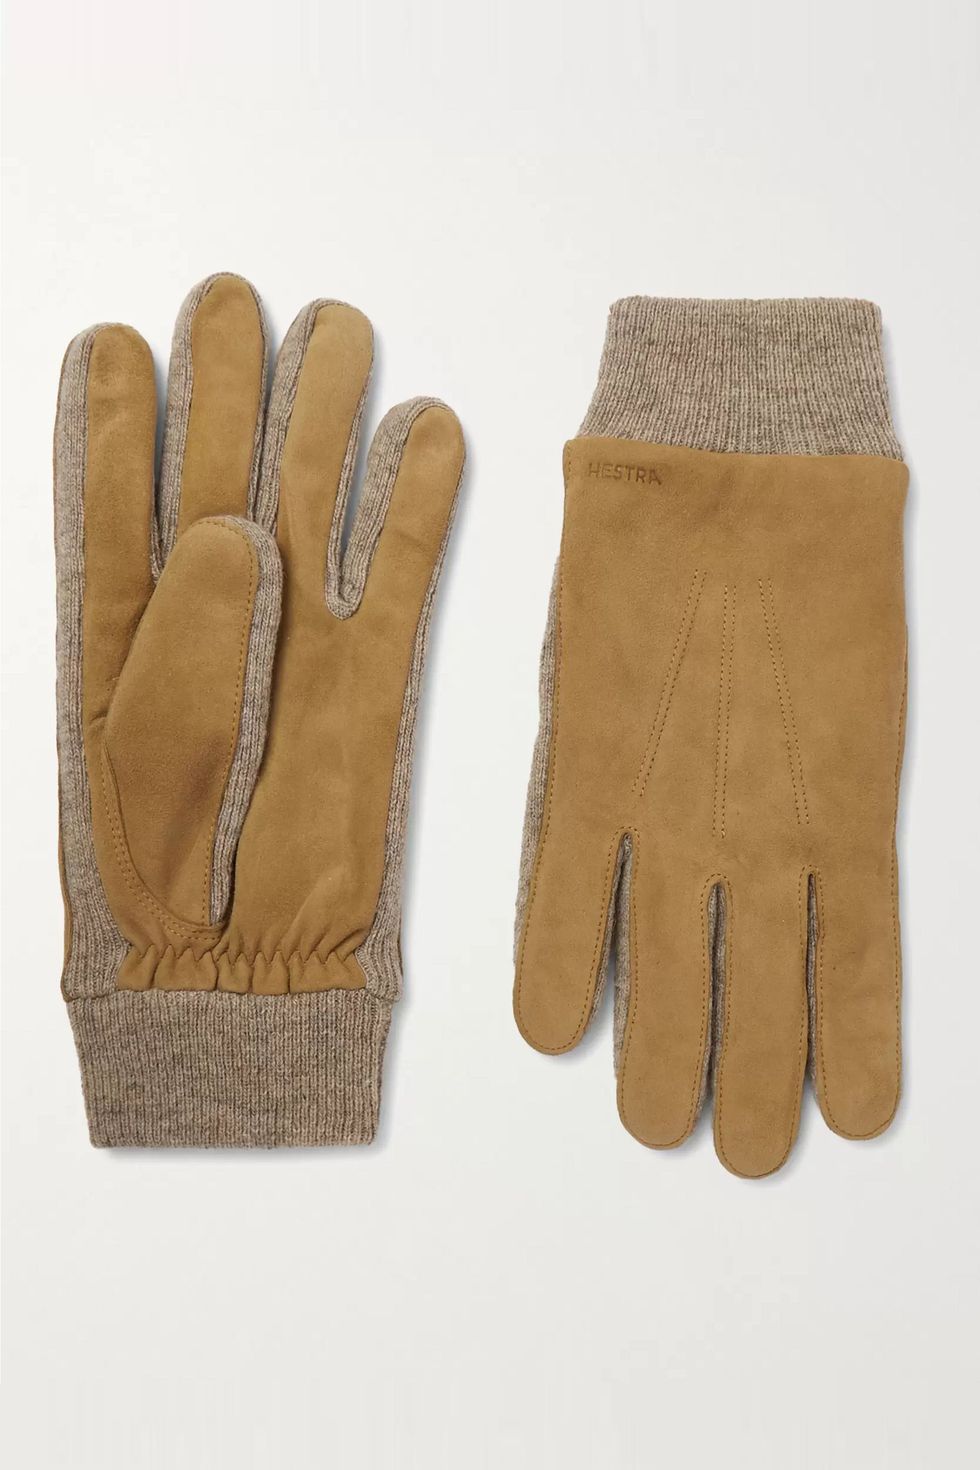 hestra, gloves